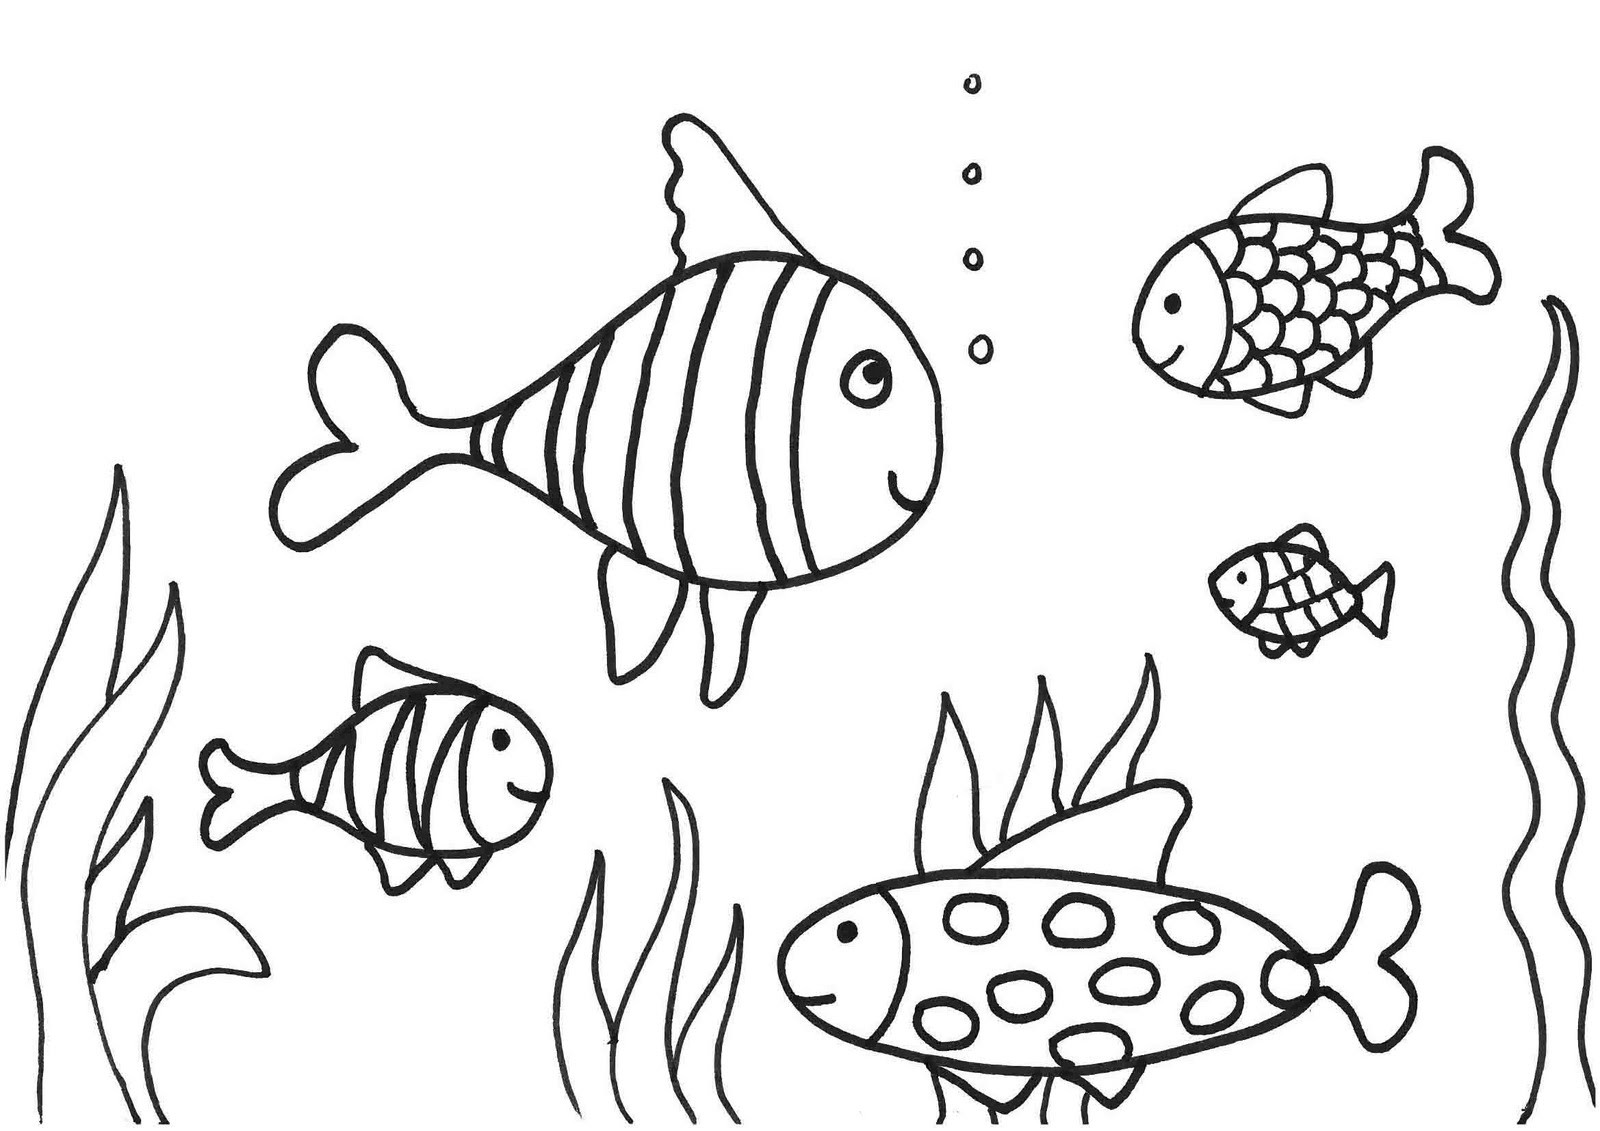 Ausmalbilder Fische Kostenlos
 KonaBeun zum ausdrucken ausmalbilder fisch